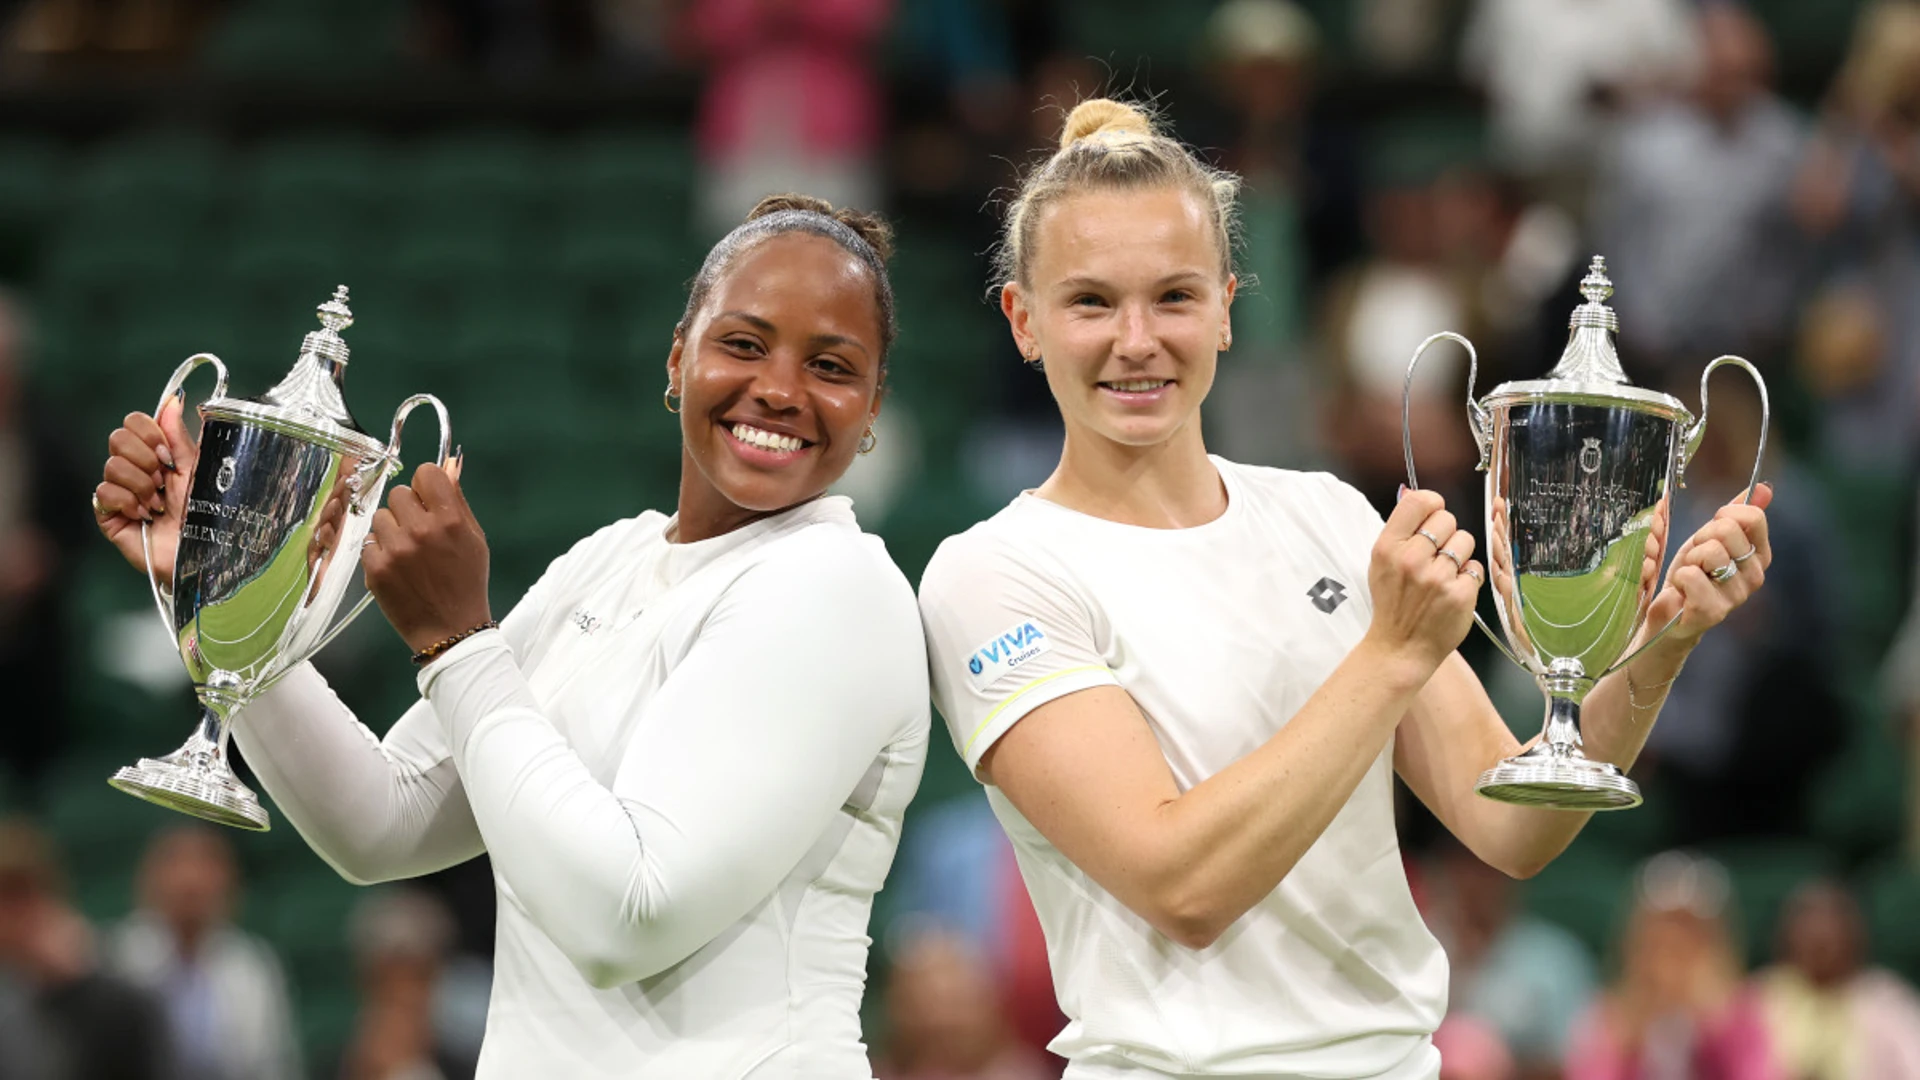 American Townsend wins Wimbledon doubles crown alongside Siniakova